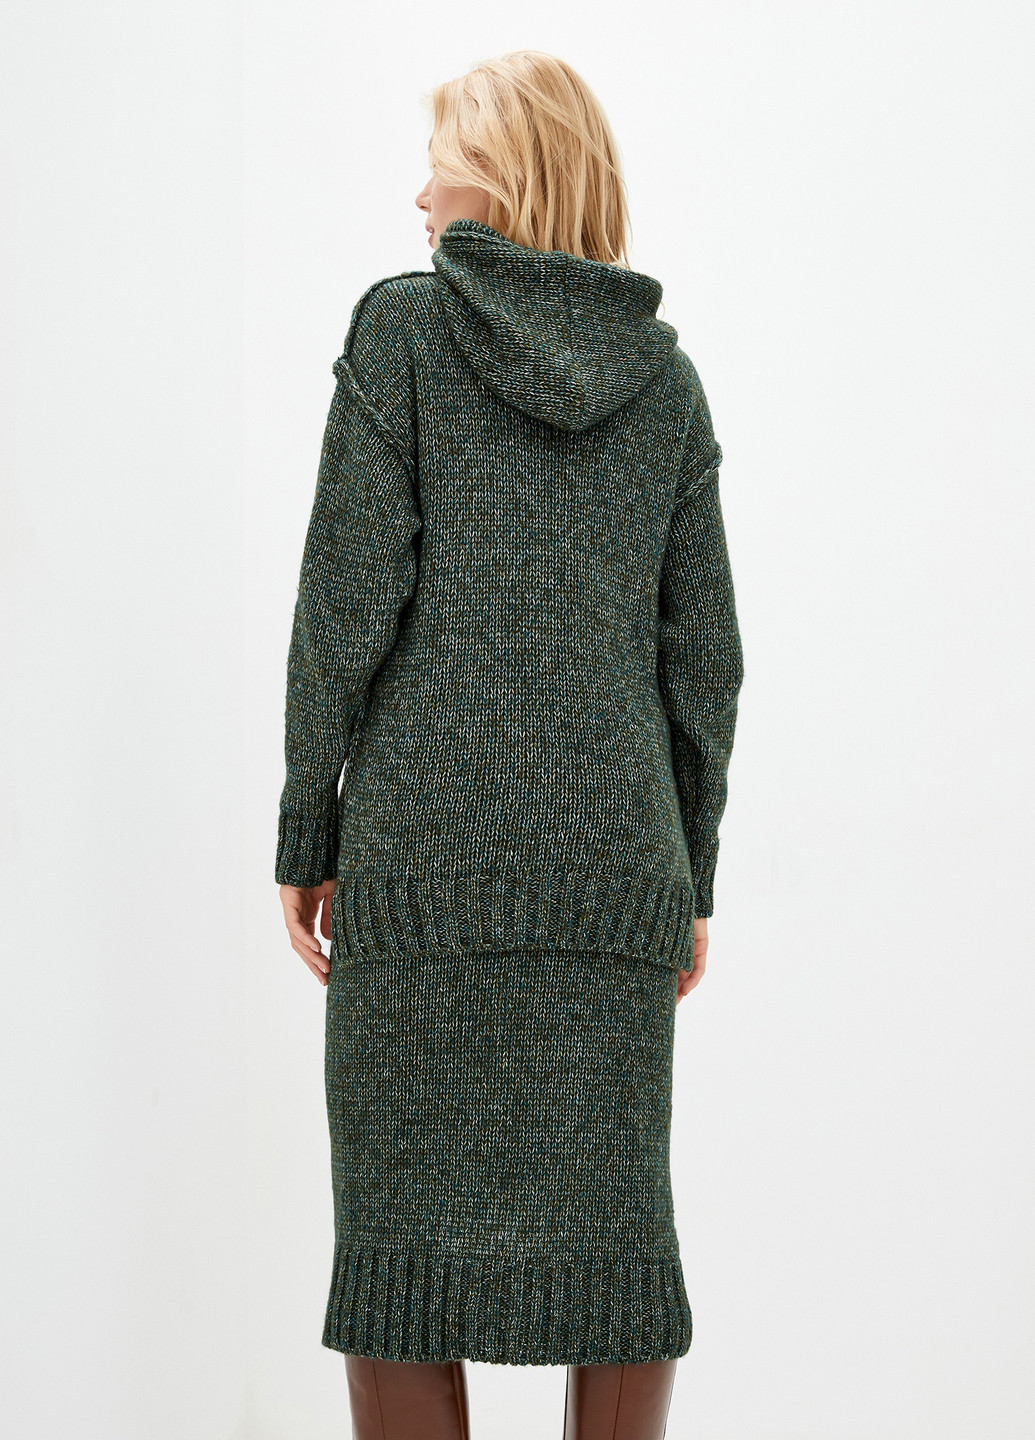 Костюм (свитер, юбка) Sewel юбочный меланж темно-зелёный кэжуал акрил